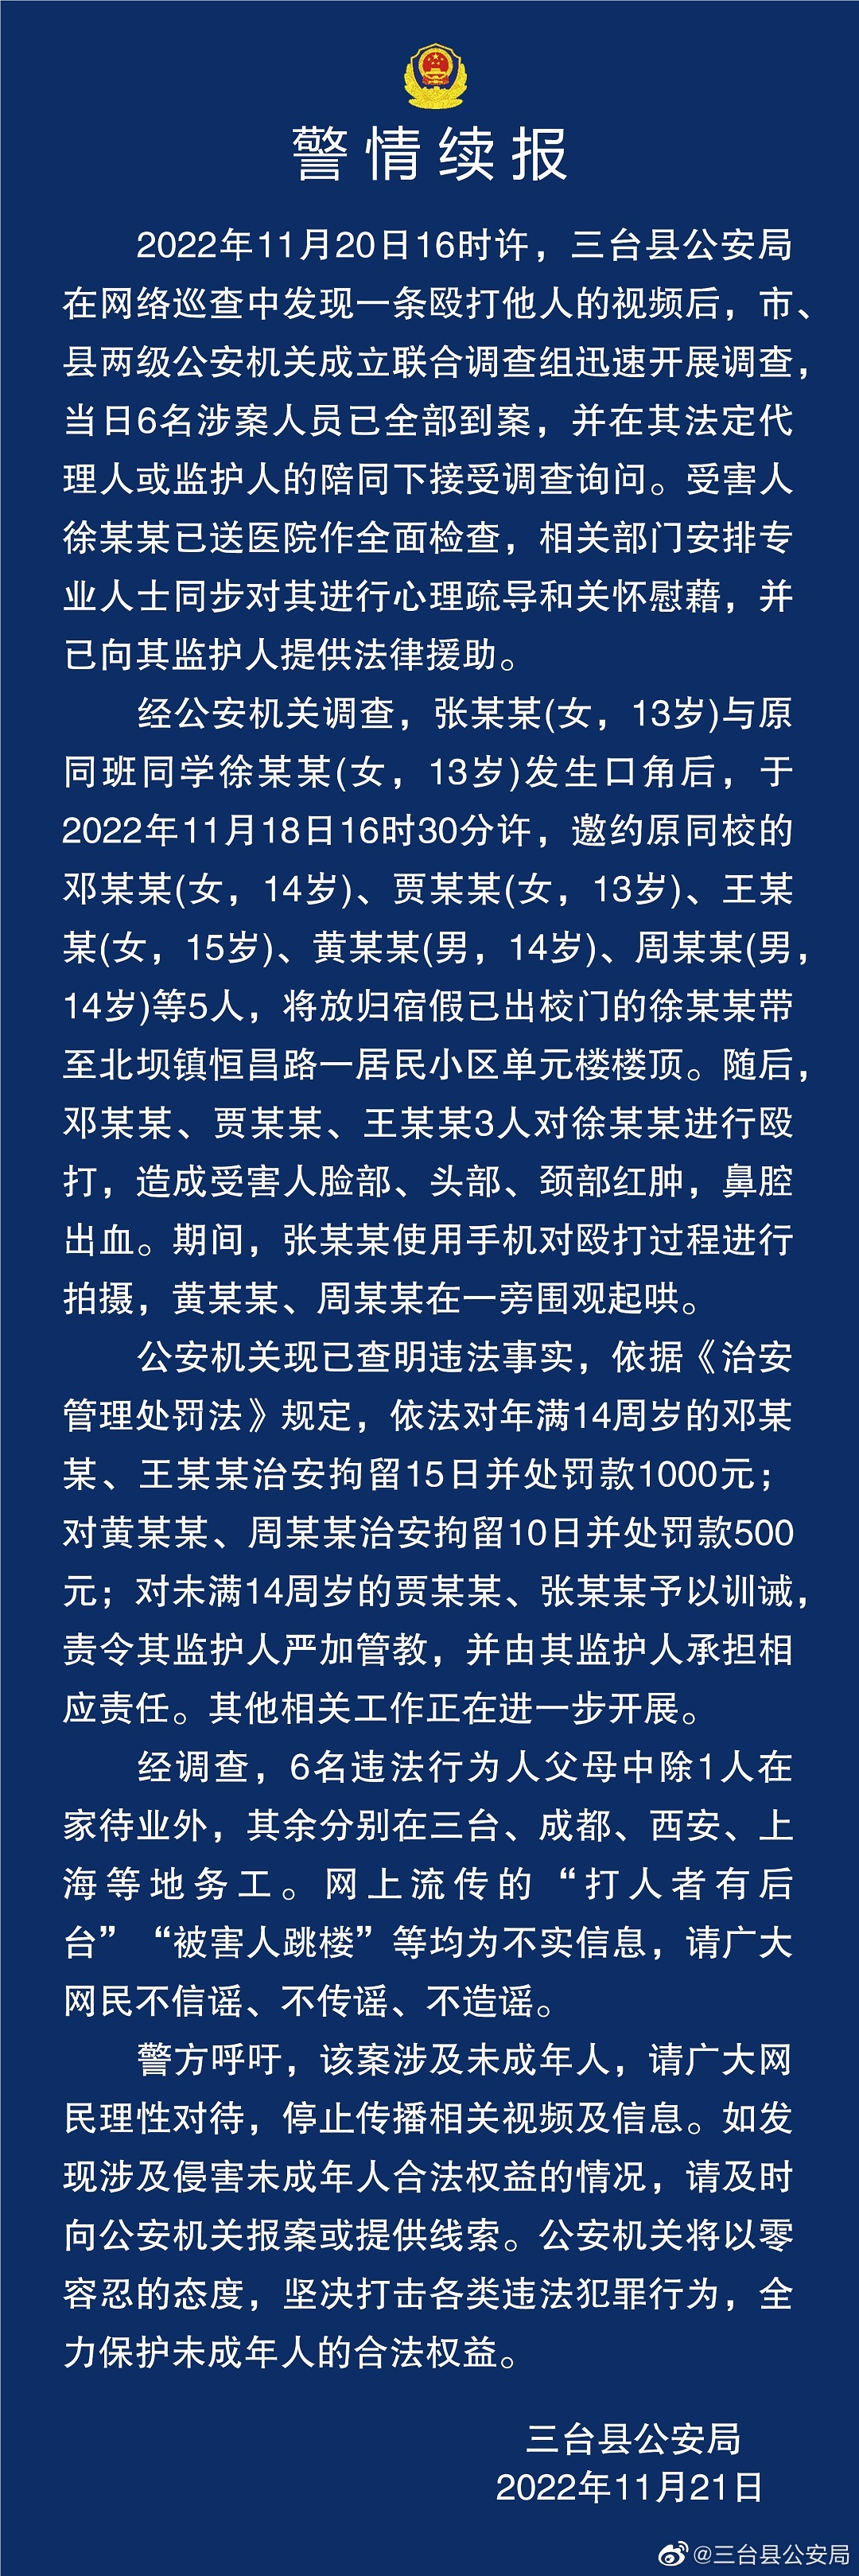 三台县公安局第二次在微博11月21日晚上中午1337分钟再次发《警情续报》.png